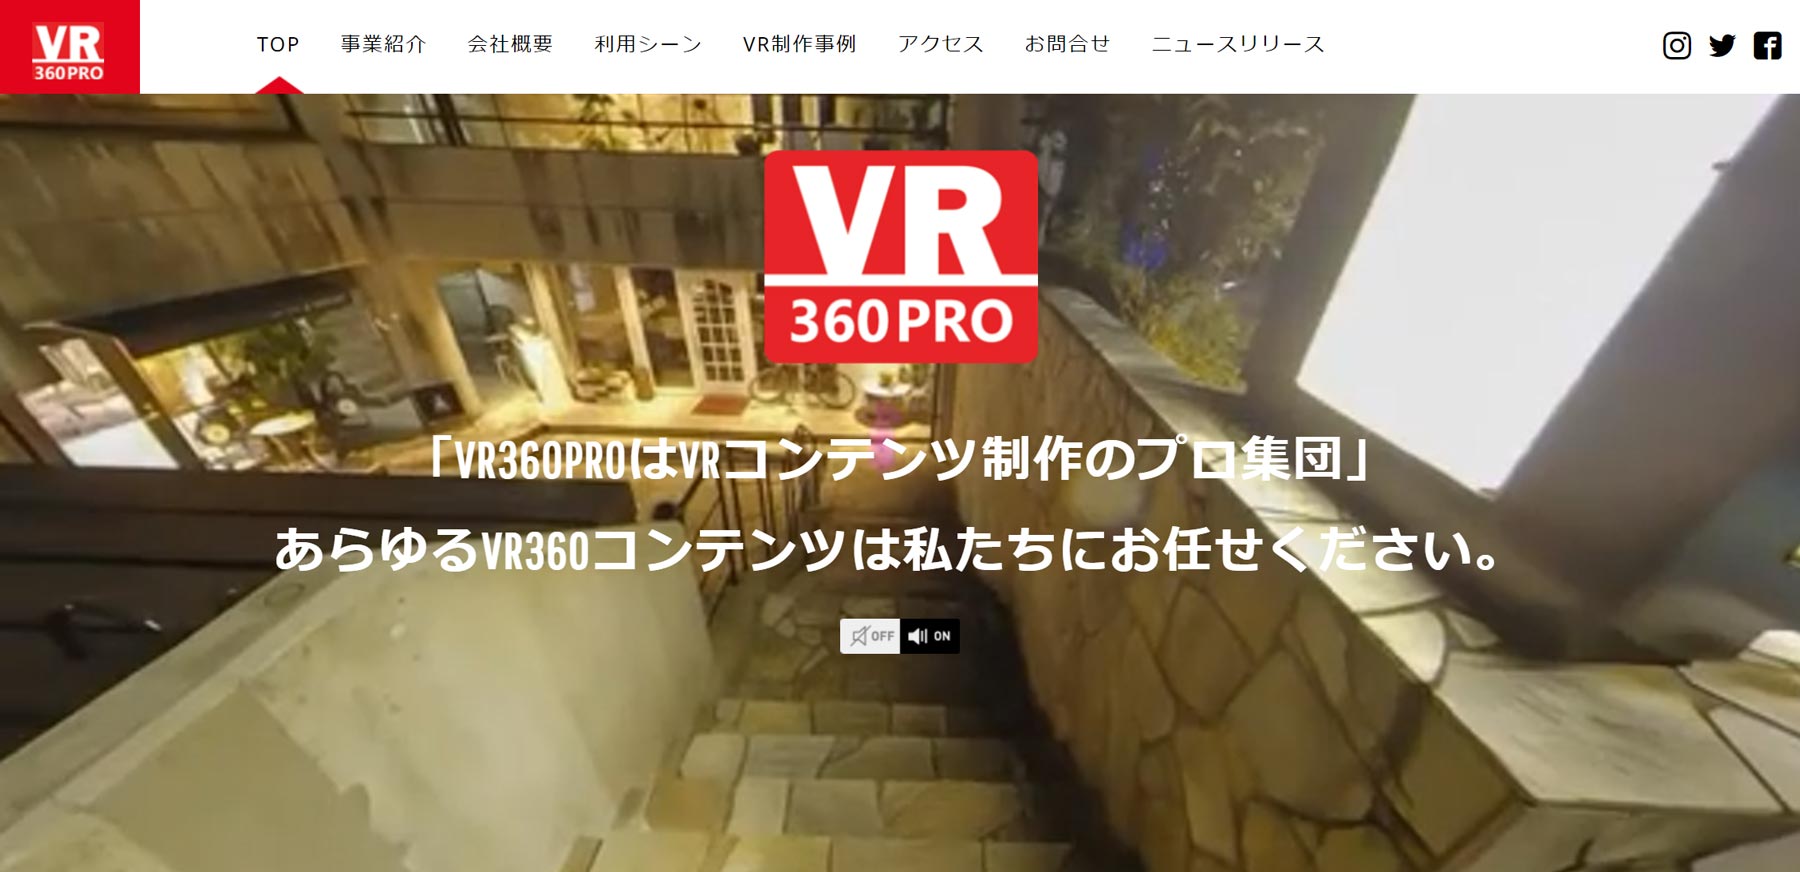 VR360PRO公式Webサイト